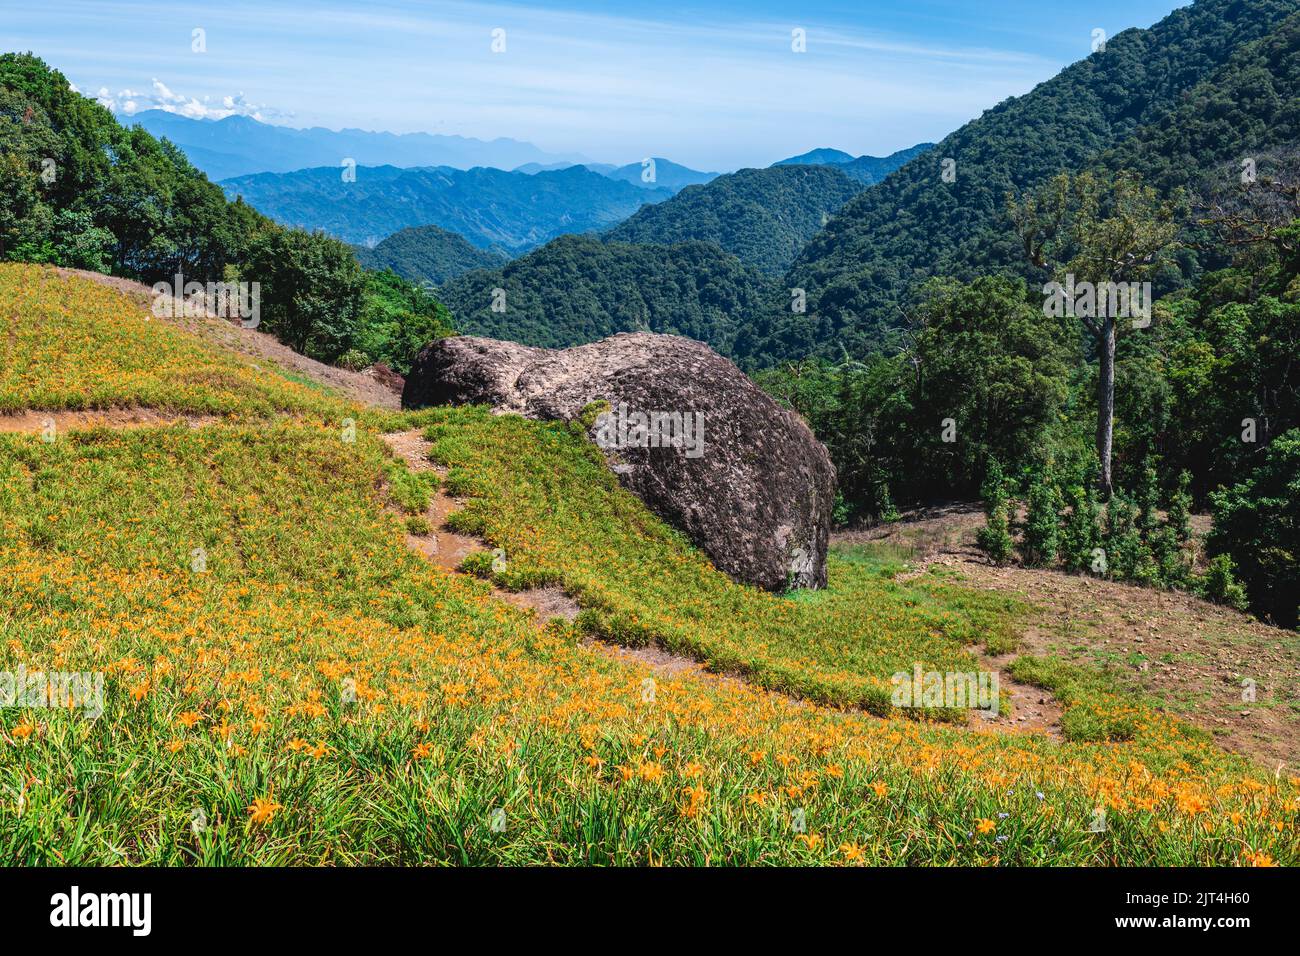 Granja de flores Daylily en la montaña Chike en el municipio de yuli, Hualien, Taiwán Foto de stock